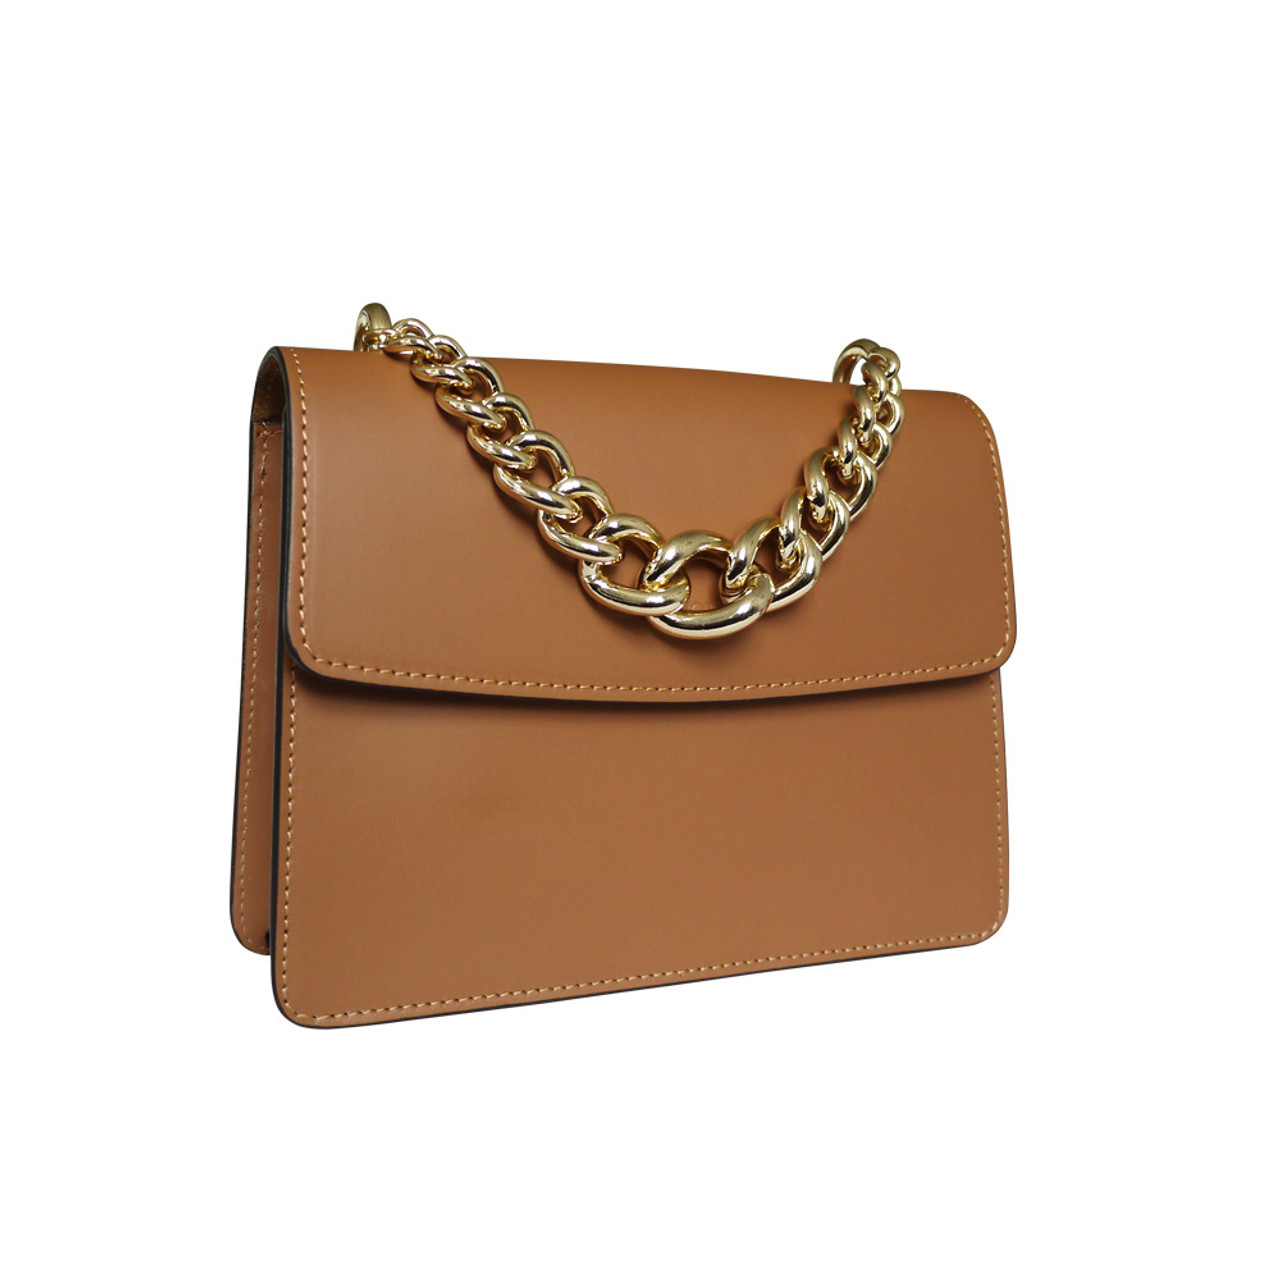 Stefano Turco Anna Leather Grab Chain Handbag - Attavanti